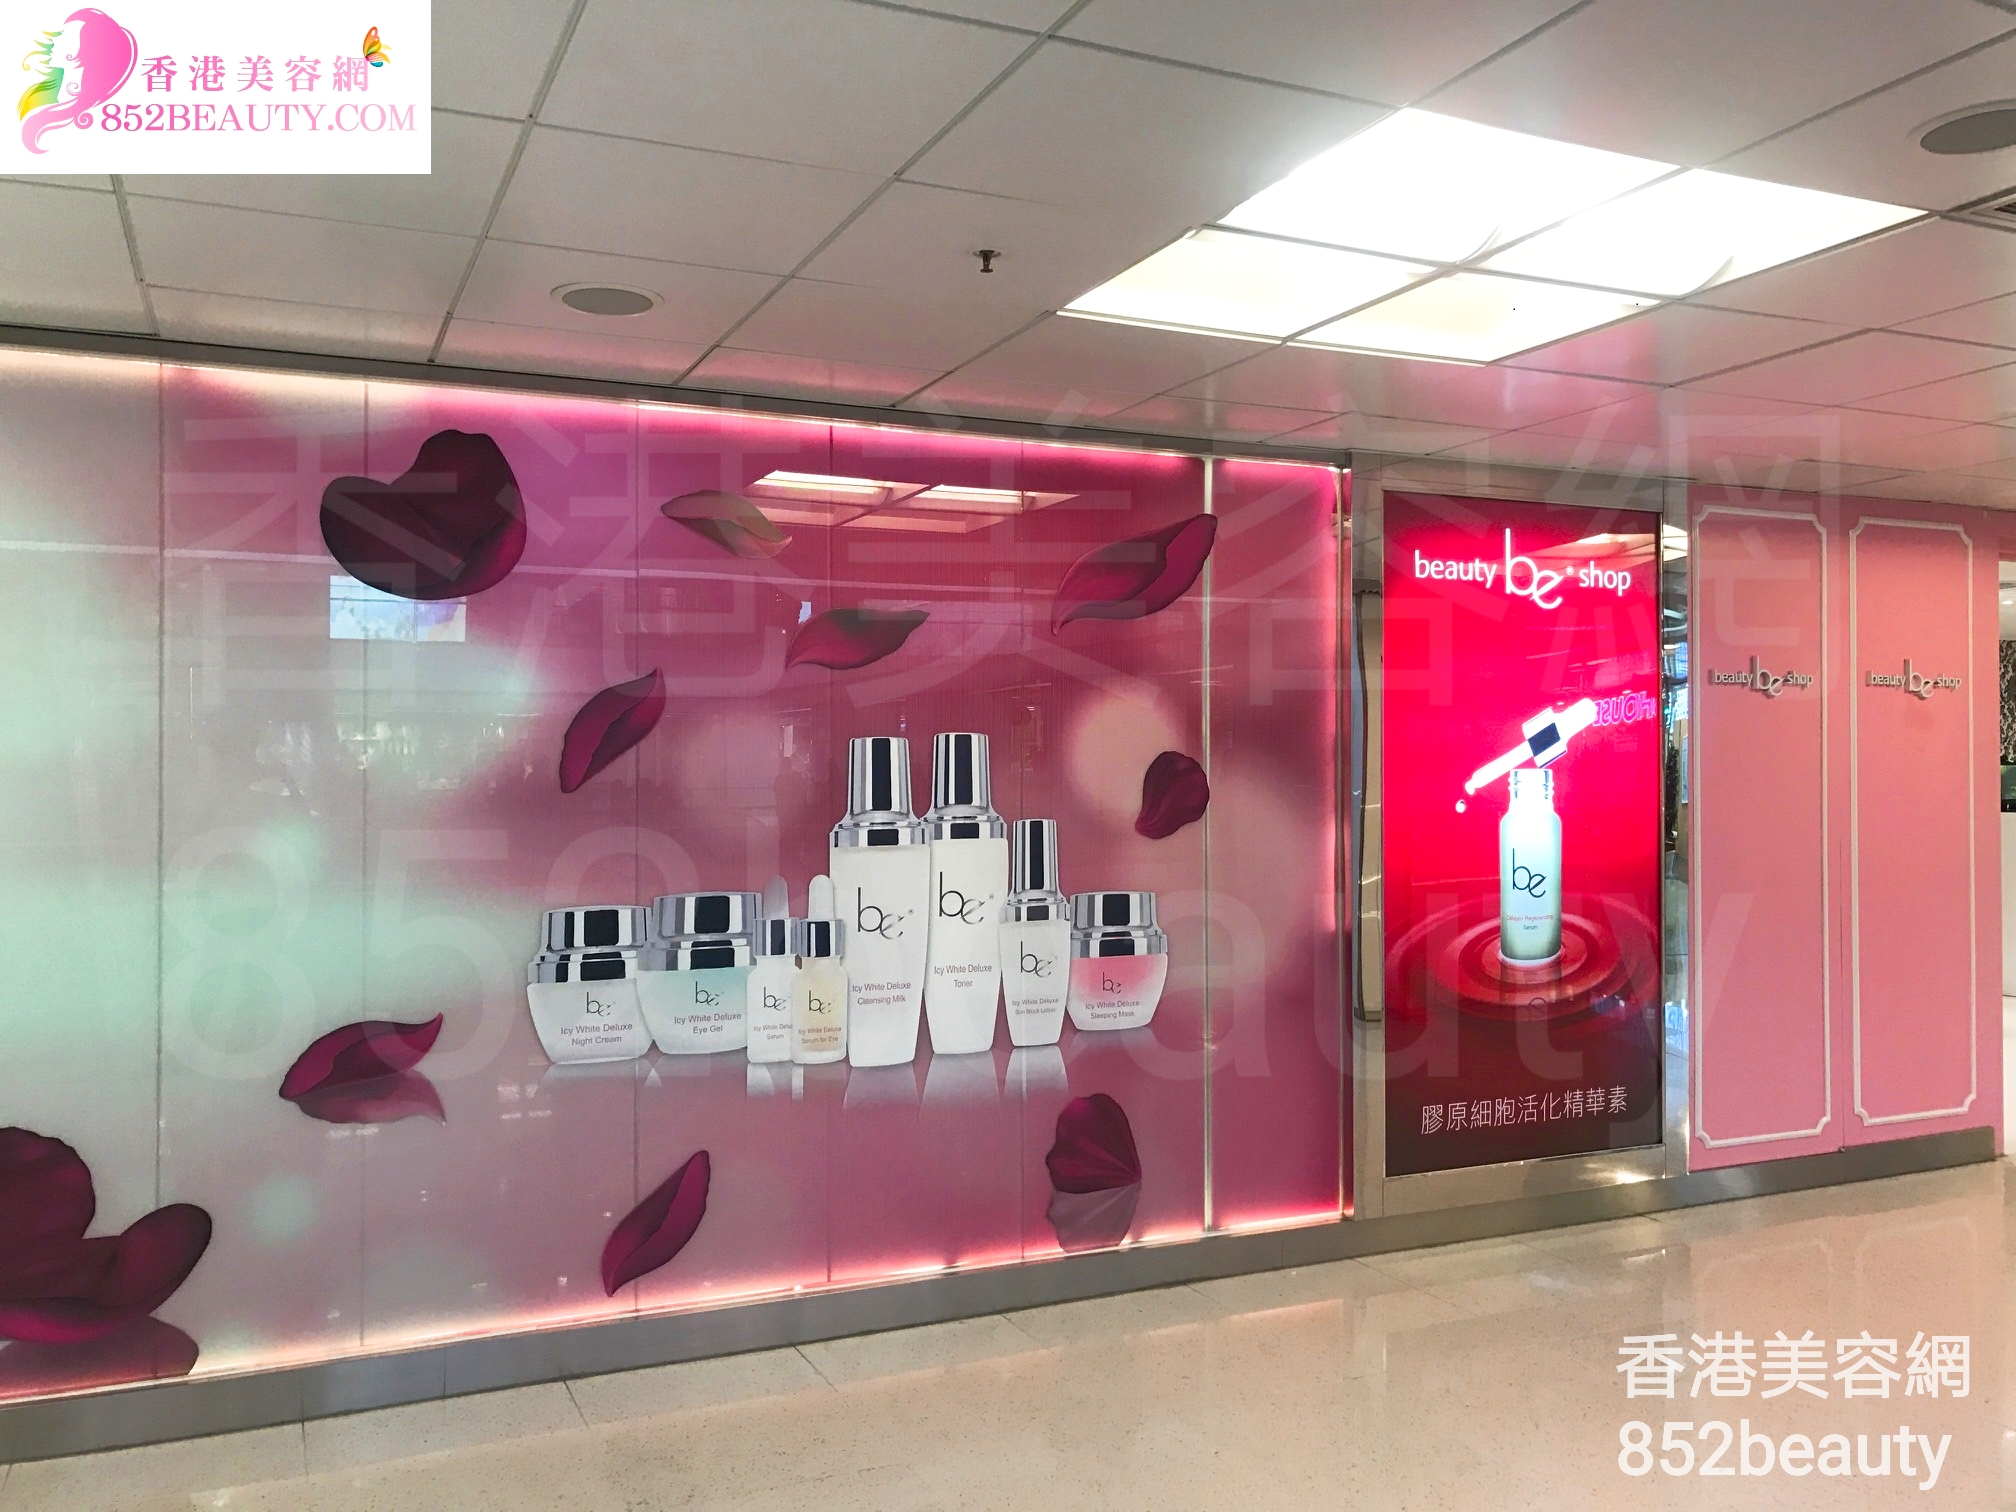 纤体瘦身: be beauty shop (葵涌廣場)